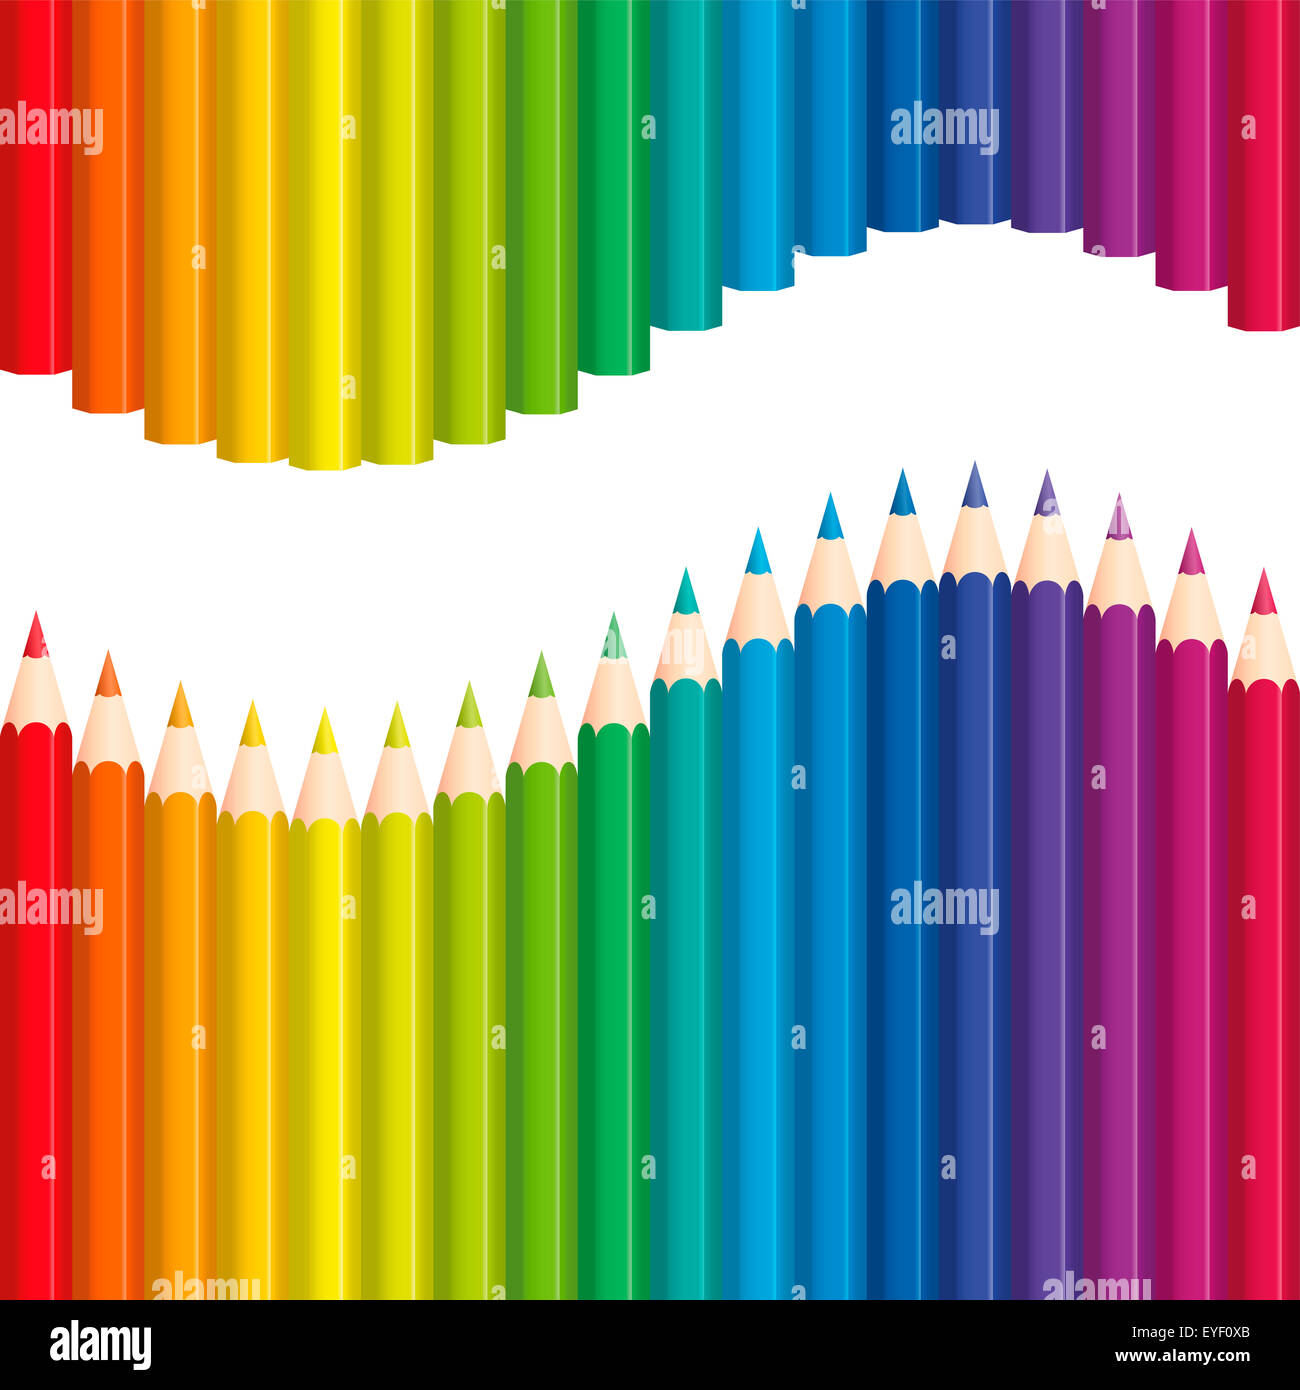 Buntstifte oder Buntstifte, die eine Regenbogen farbige Welle bilden. Nahtlose Hintergrund kann in alle Richtungen erstellt werden. Stockfoto